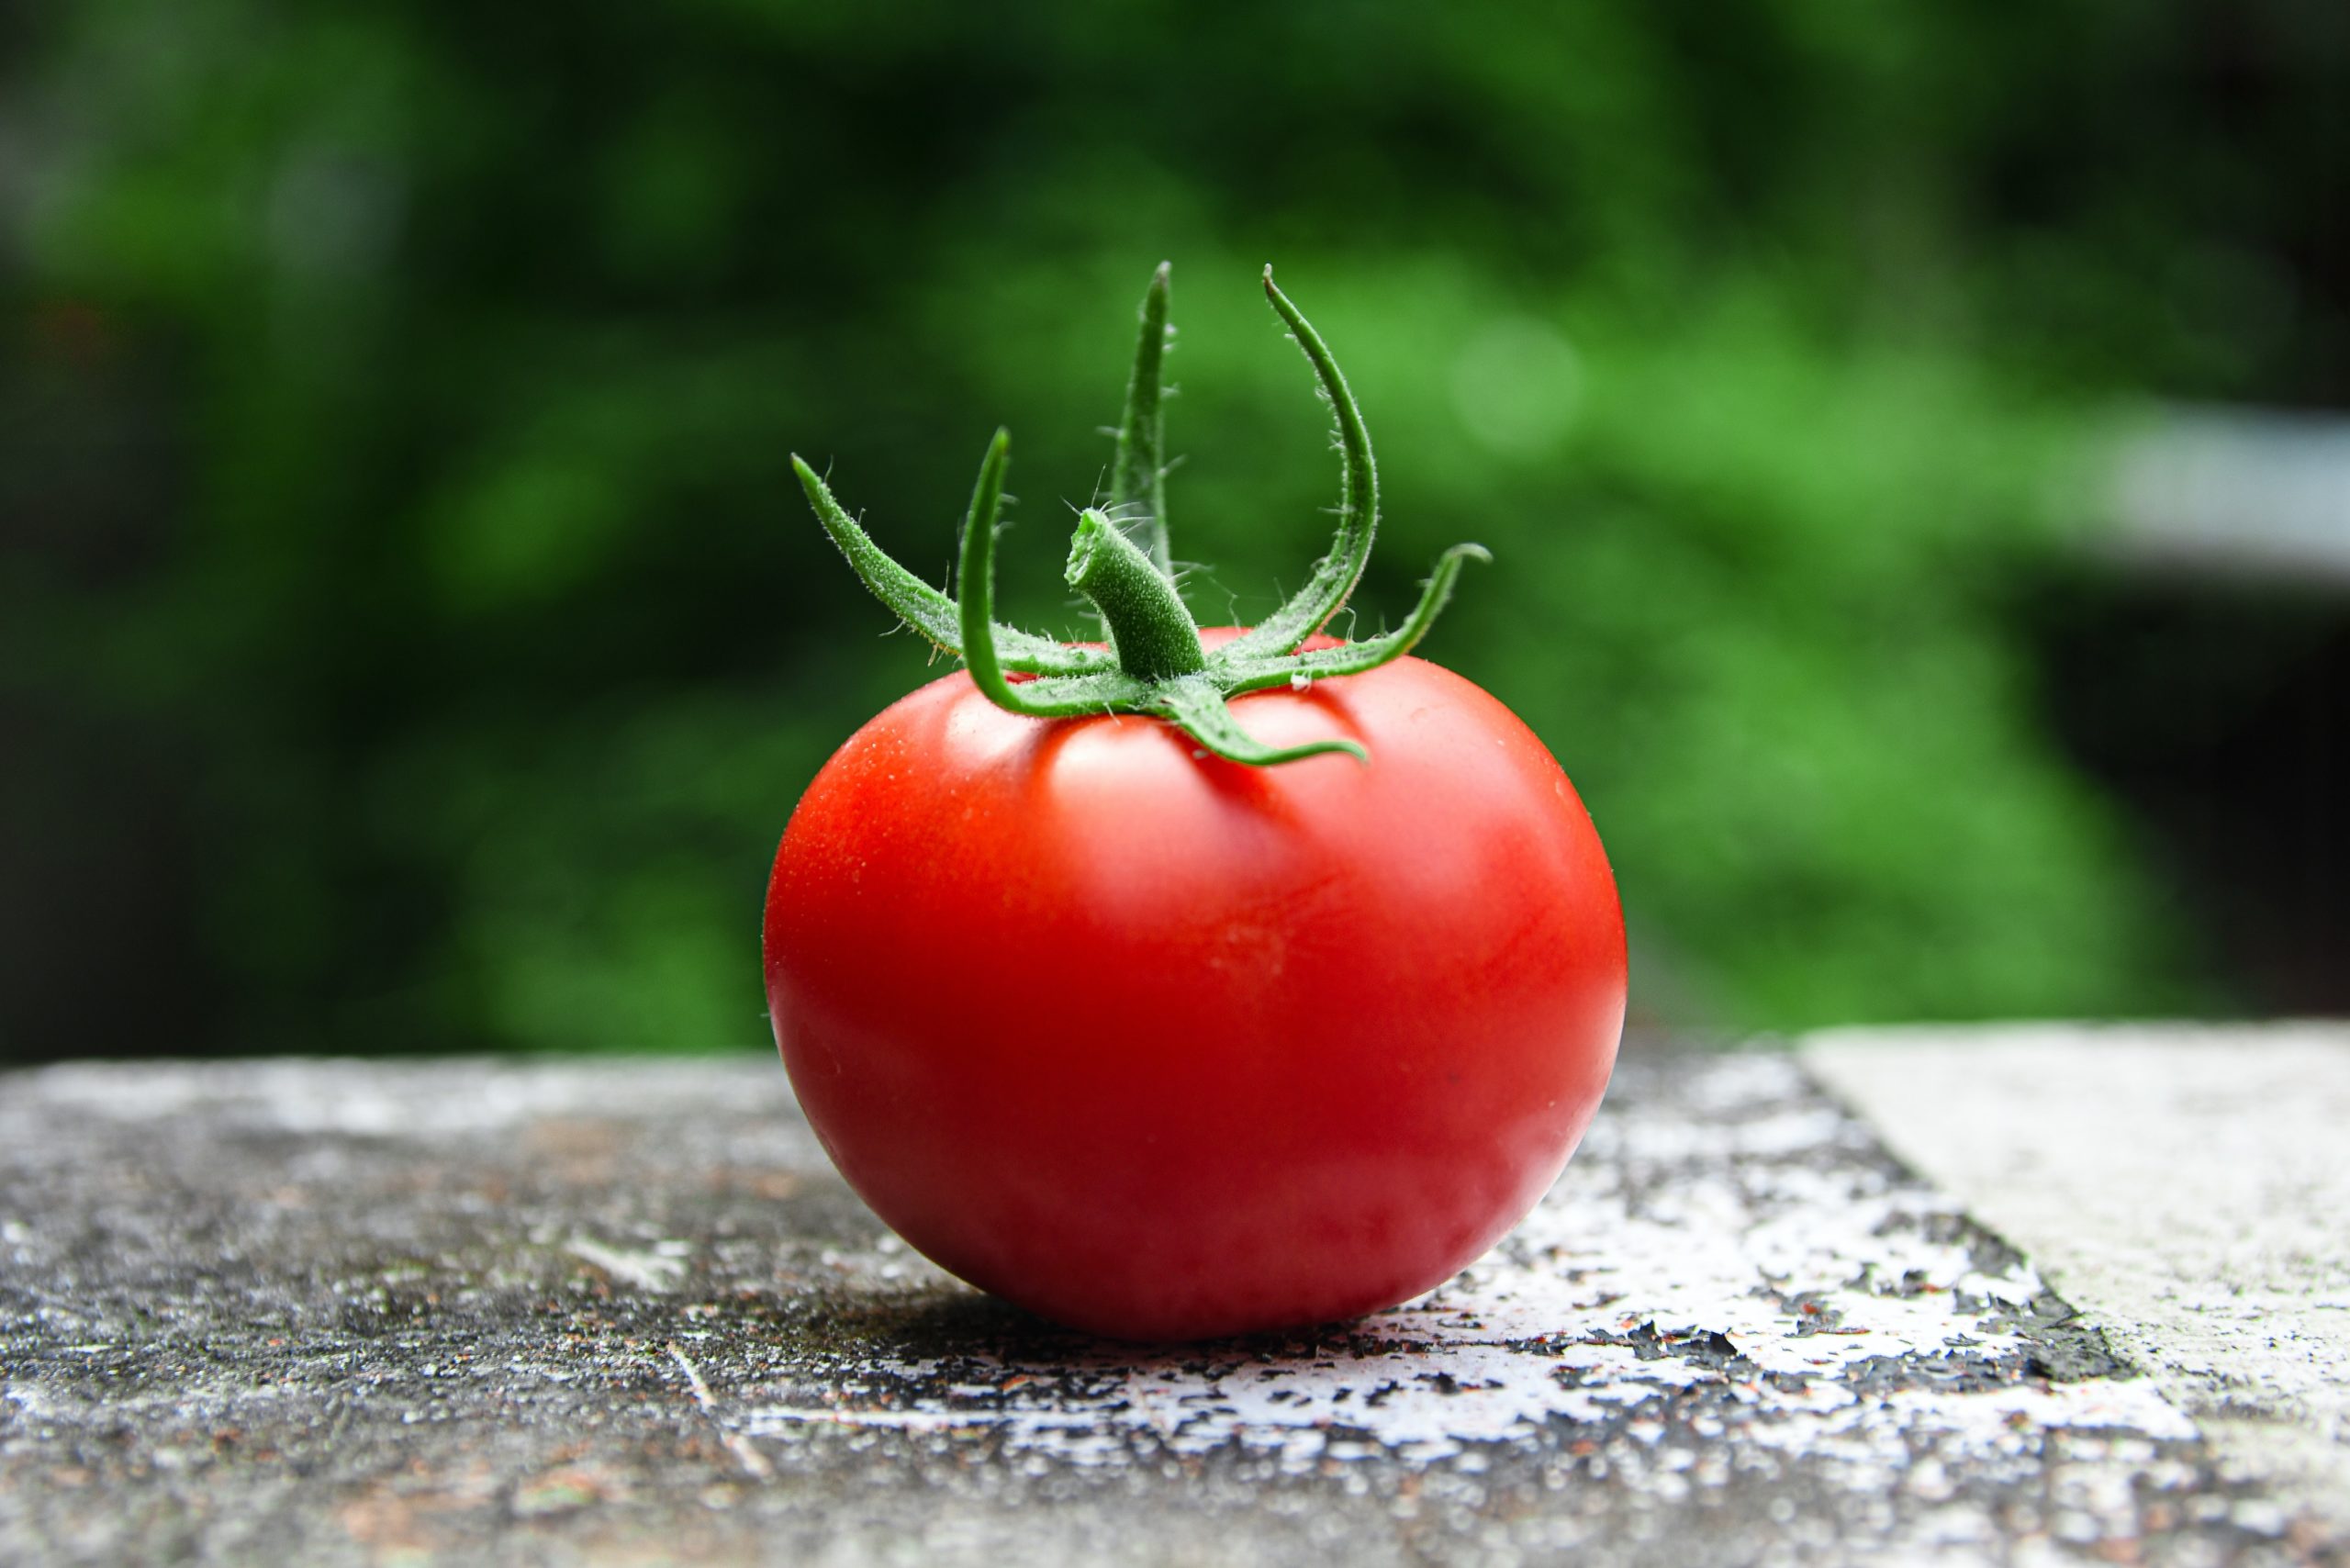 Ingredientes para la receta: El tomate — Cuaderno de Cultura Científica